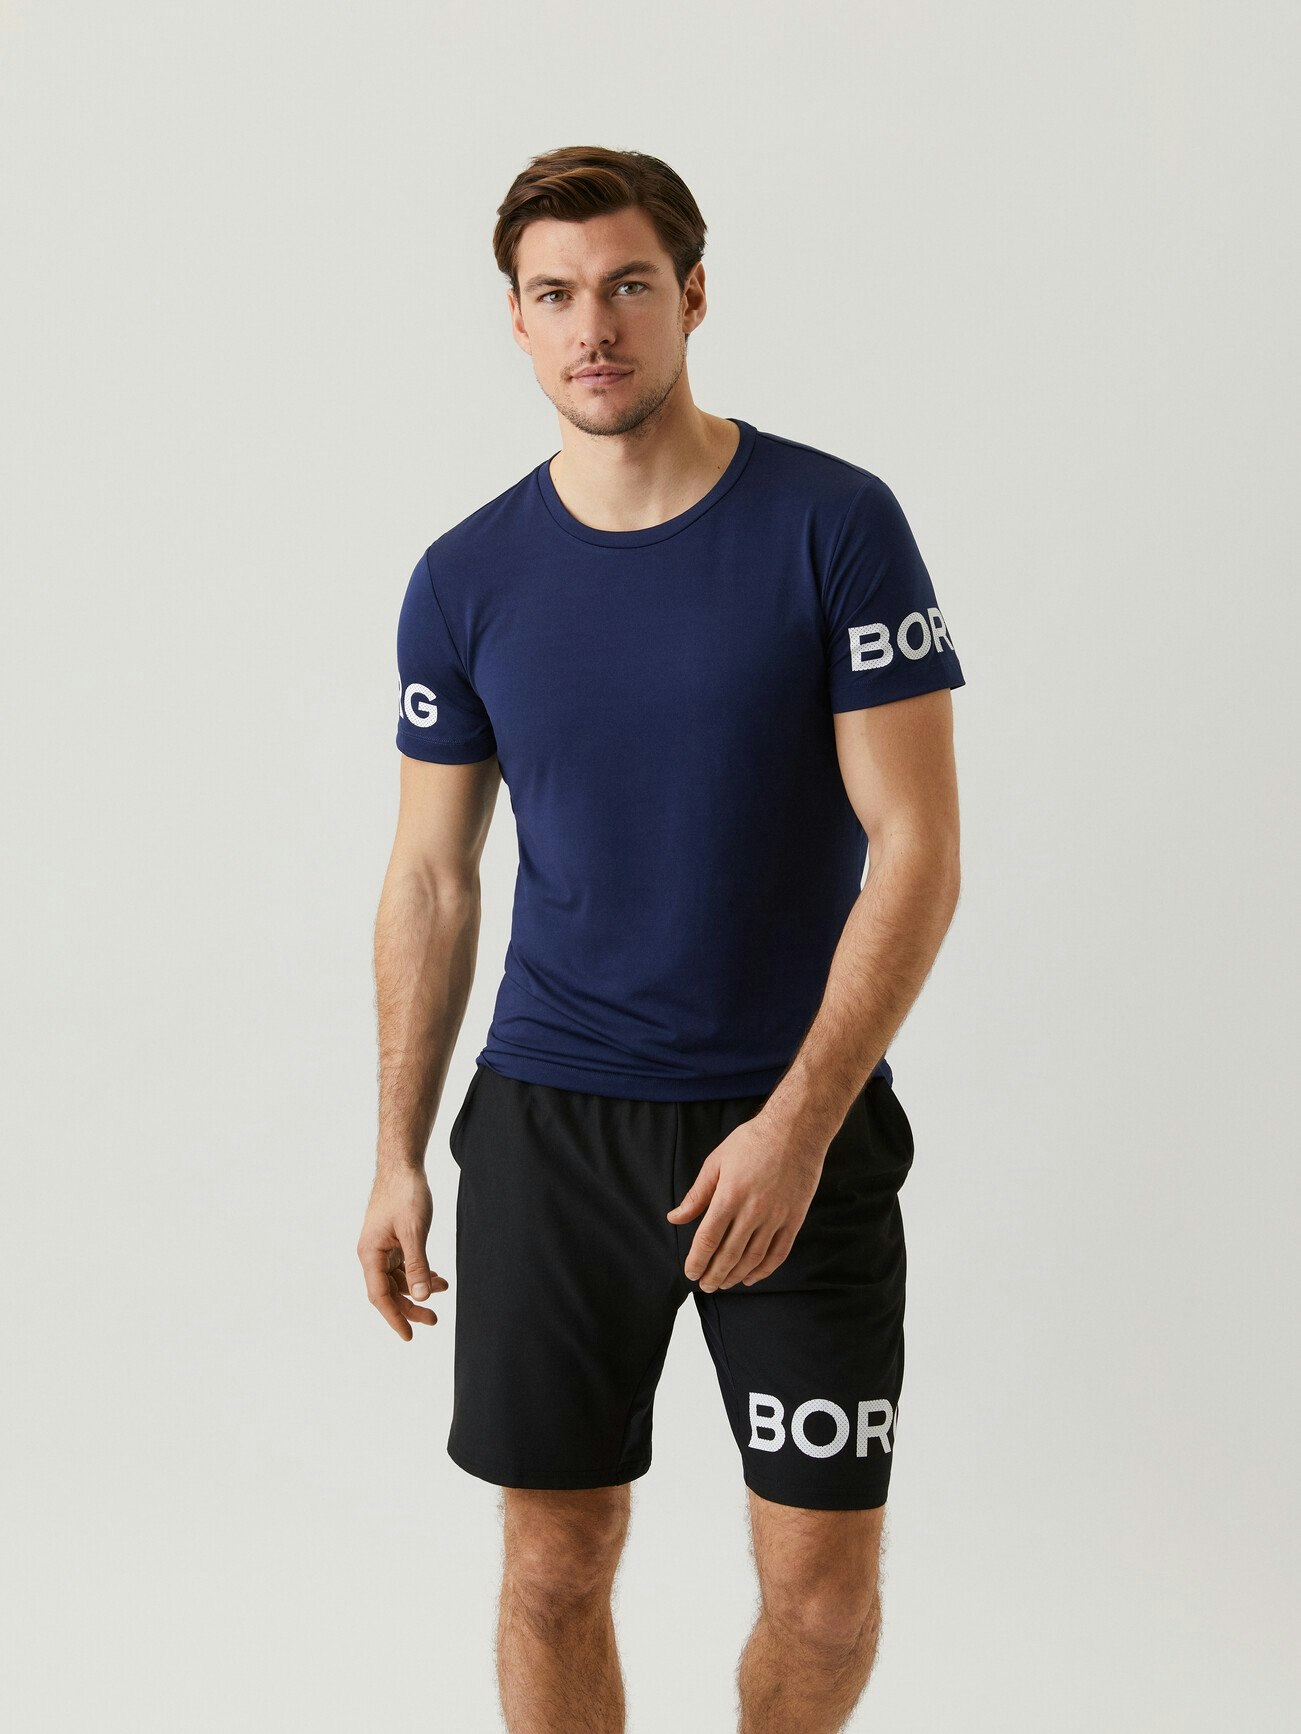 Björn Borg Tee Short Sleeve Kurzarm Shirt Herren Freizeit T-Shirt 1931-1200